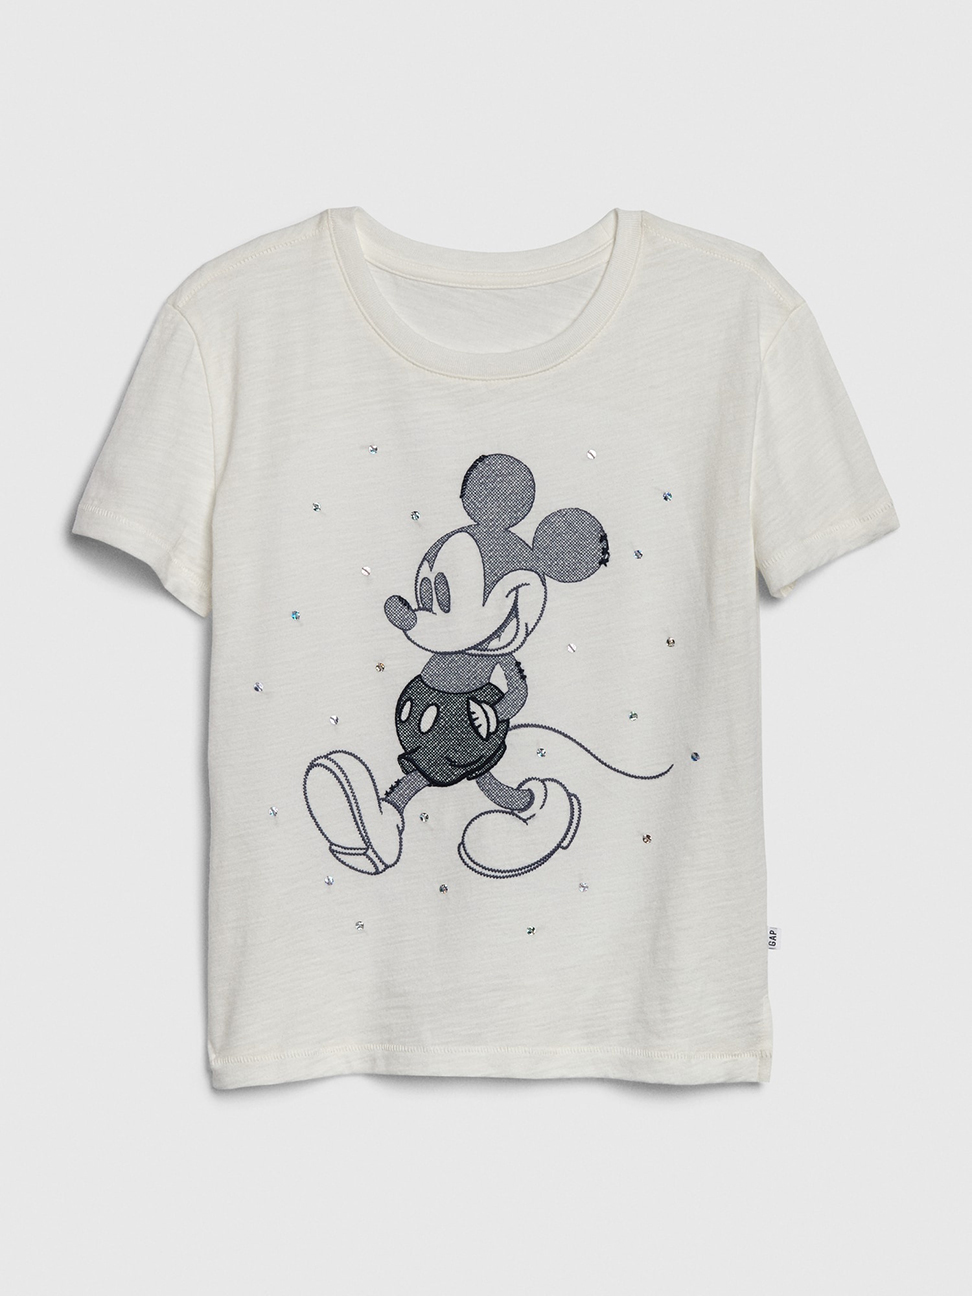 女童裝|Gap x Disney迪士尼聯名 米奇舒適圓領短袖T恤-白色